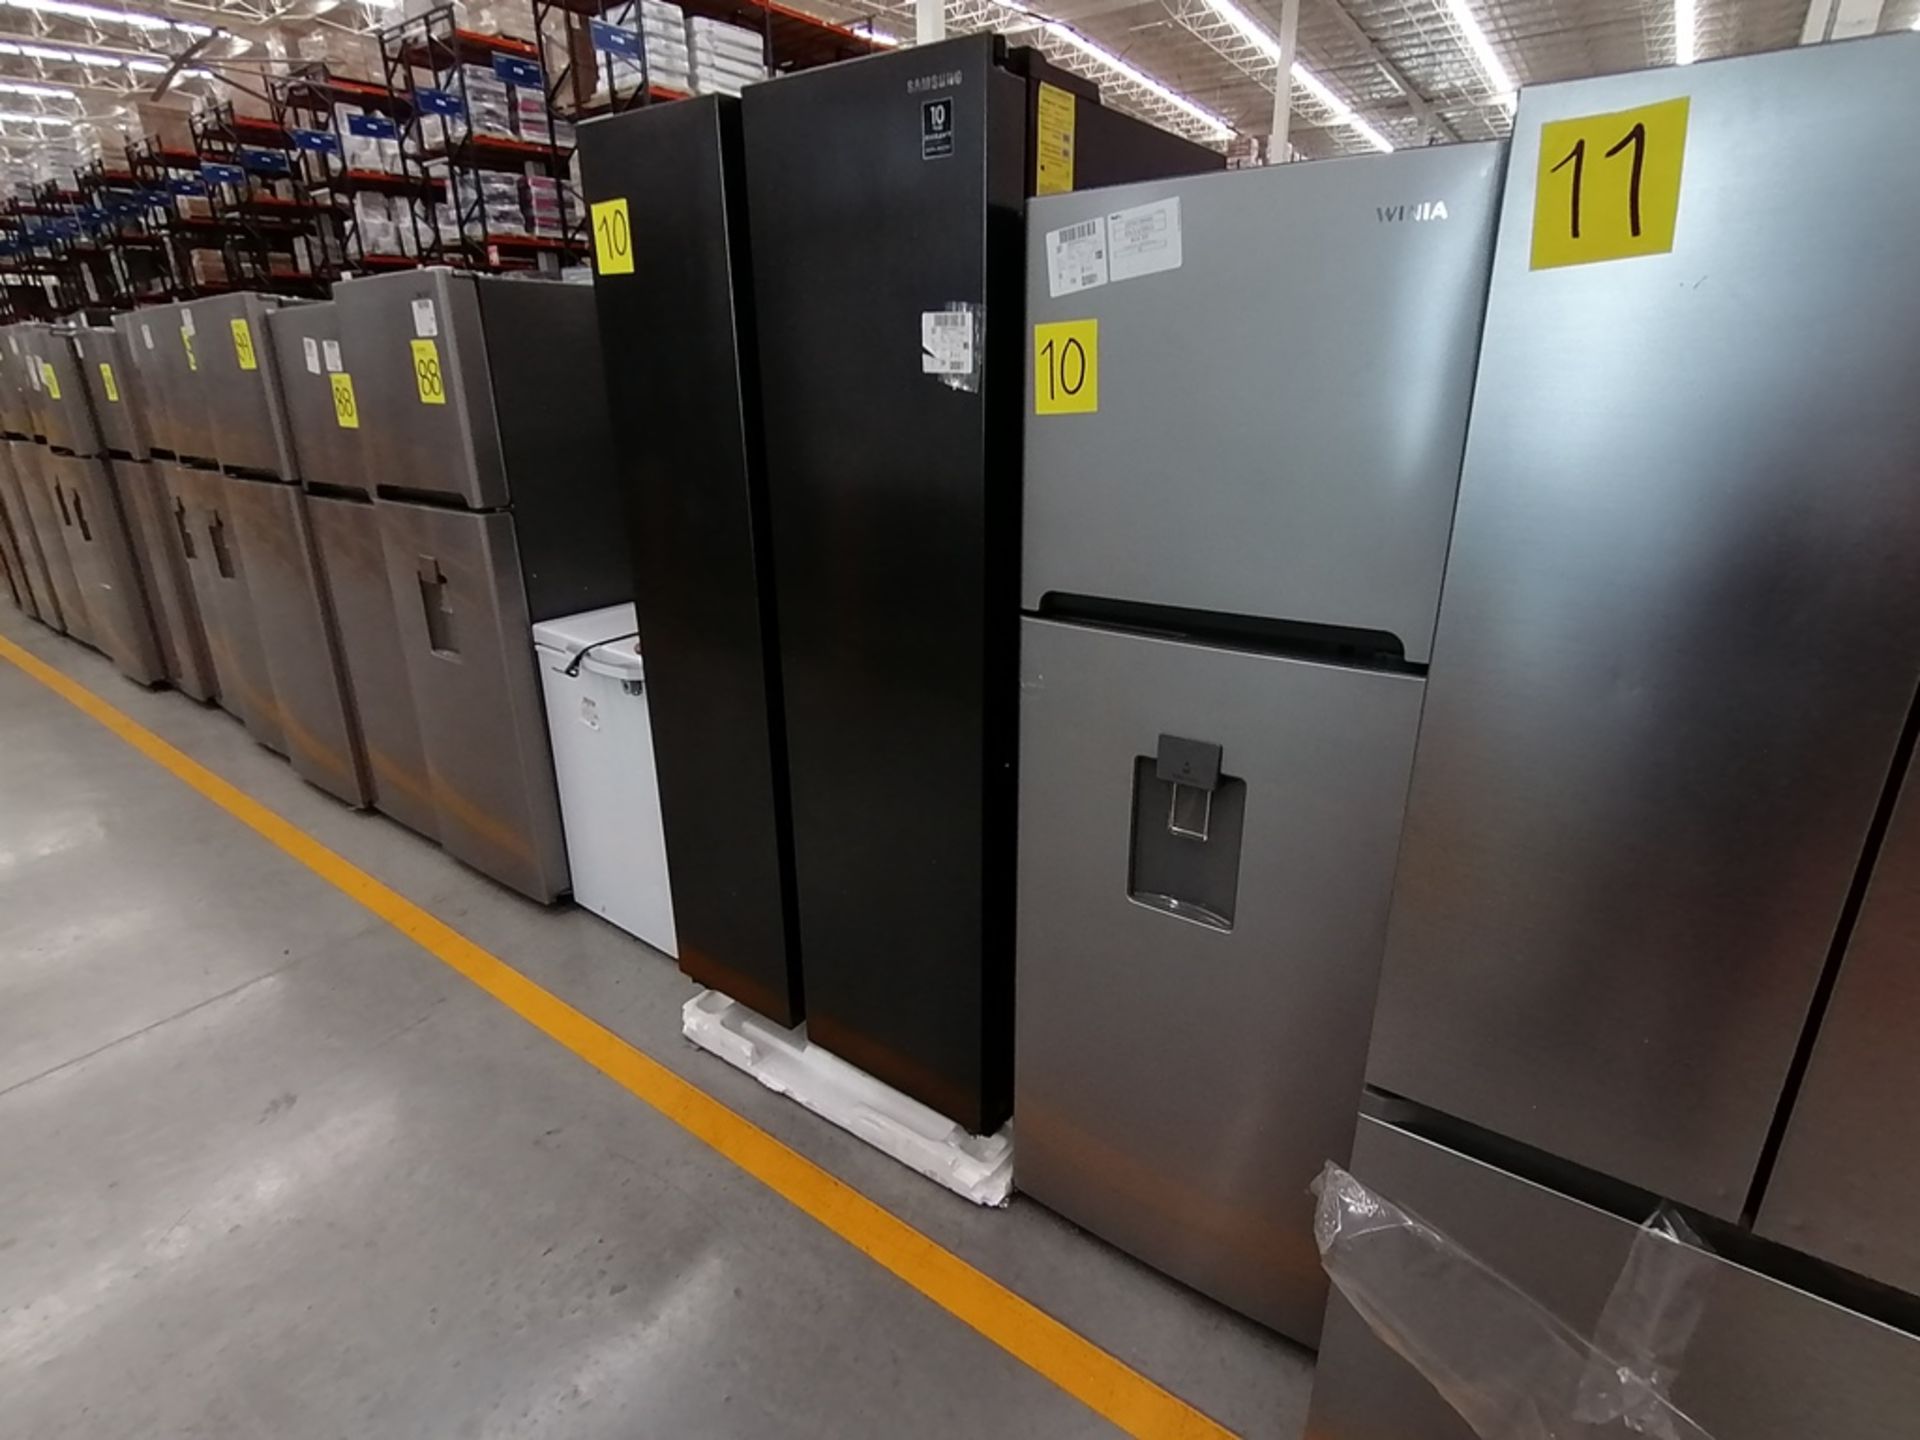 Lote de 2 refrigeradores incluye: 1 Refrigerador, Marca Samsung, Modelo RS28T5B00B1, Serie 0B2V4BAR